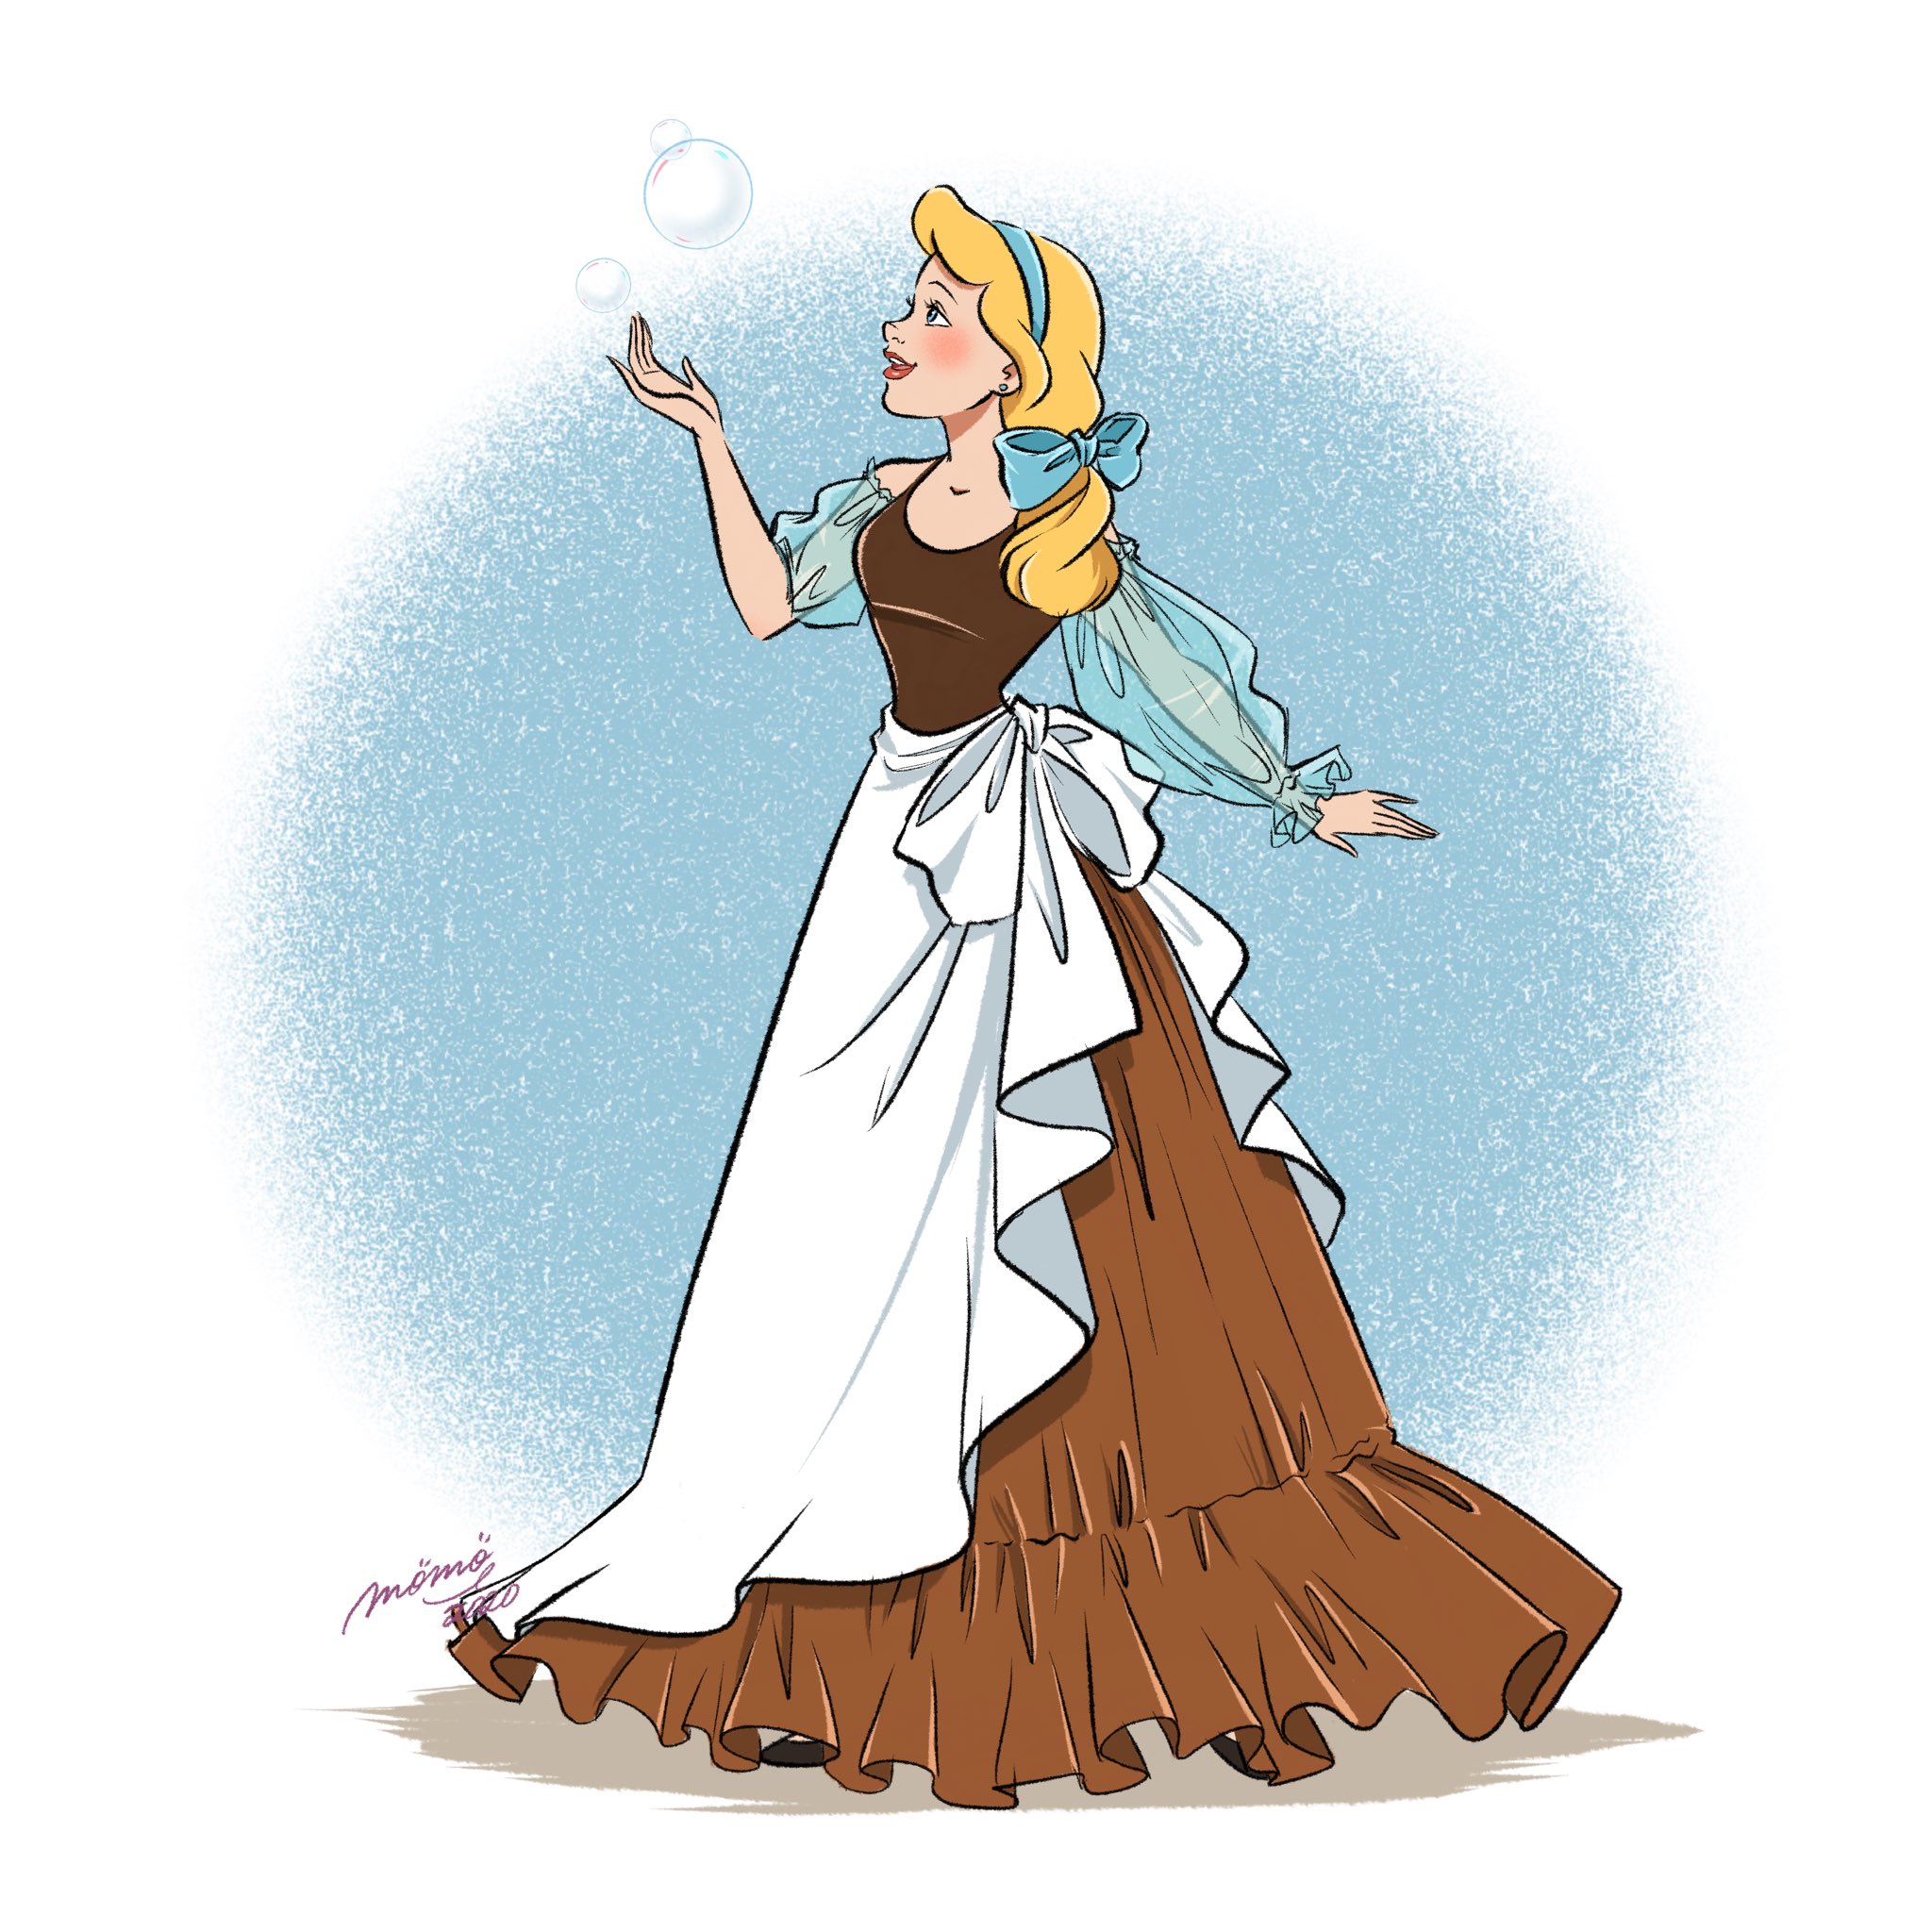 Duckymomo プリンセスになる前の衣装をイメージしたドレスを描いてみました Disney Disneyprincess Belle Cinderella ディズニープリンセス ベル シンデレラ ドレス T Co Fqbultpfla Twitter